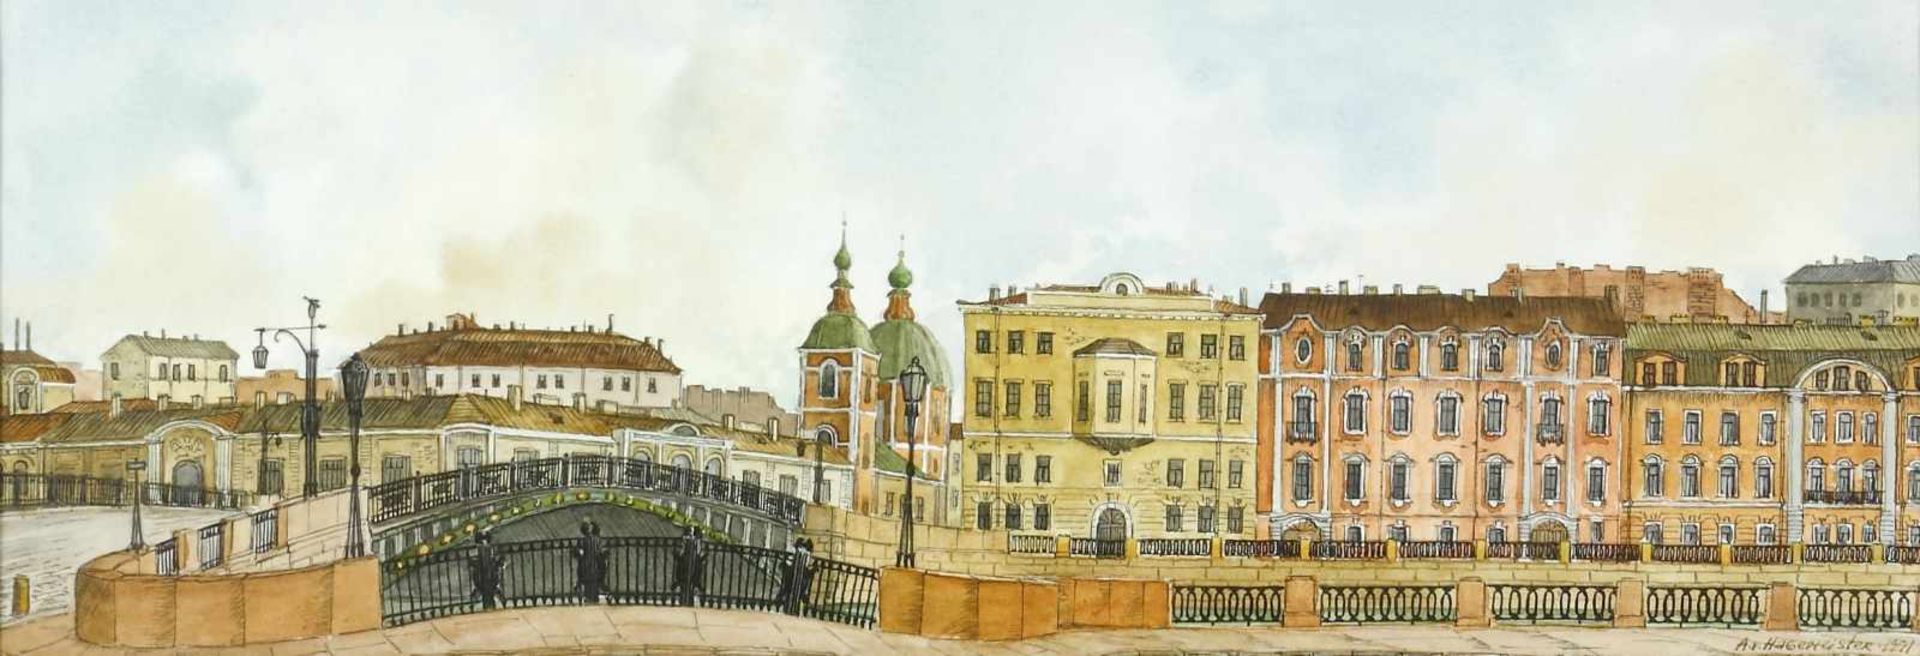 Hagemeister, Sascha von (geb. 1956)Ansicht von St. Petersburg. 1991. Aquarell auf Karton. 14 x 39